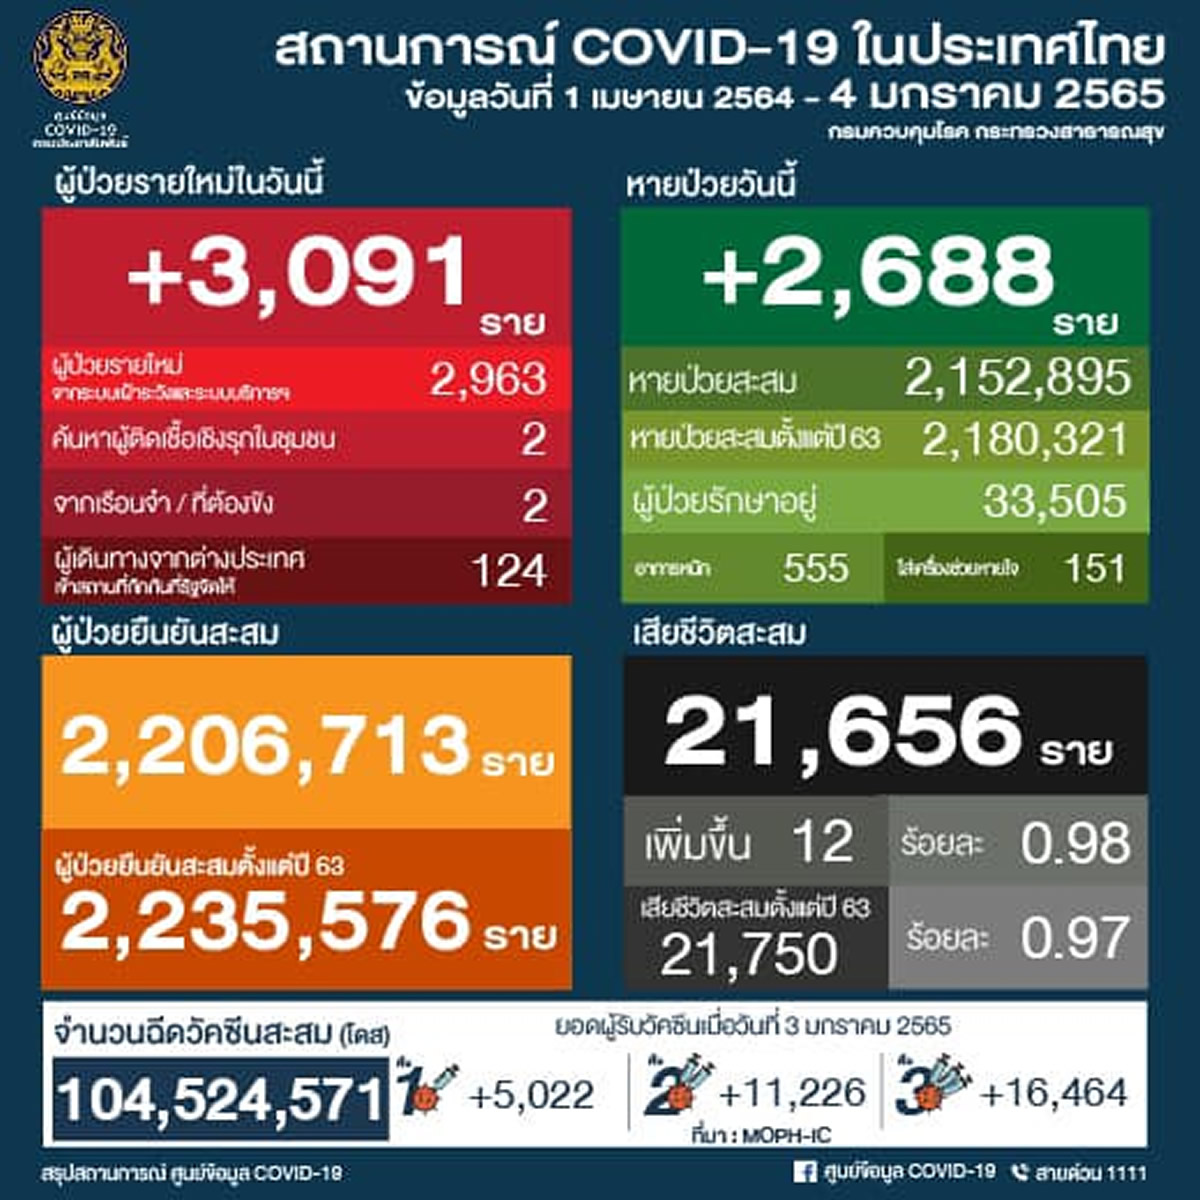 タイ 3,091人陽性 12人死亡／チョンブリ 499人陽性／バンコク 376人陽性／ウボンラチャタニ 328人陽性［2022年1月4日発表］